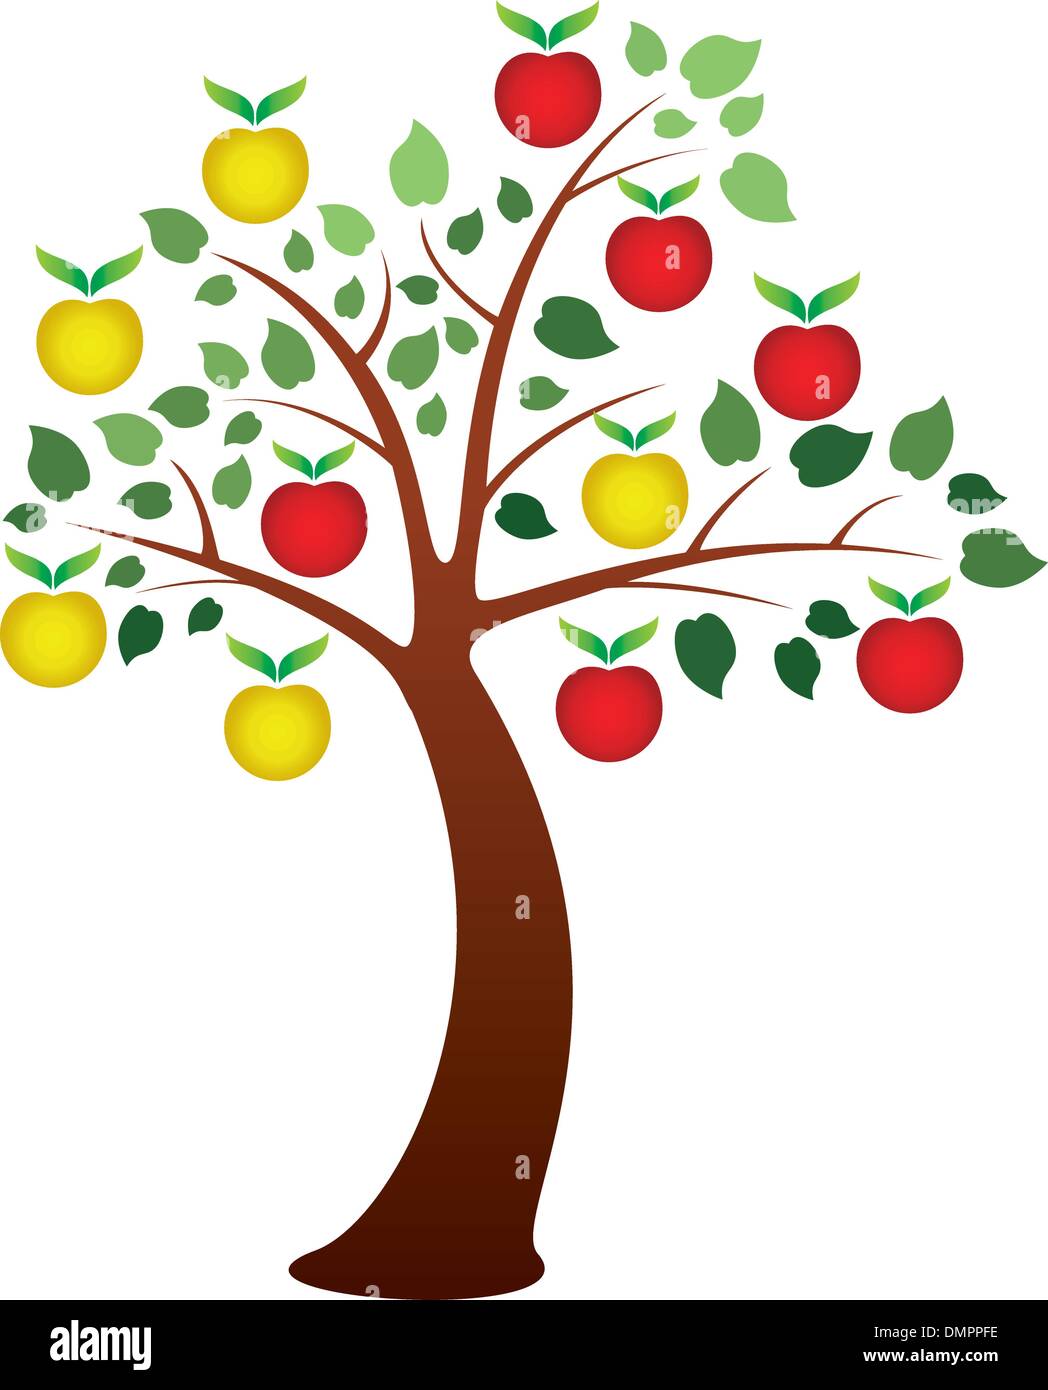 Apfelbaum hintergrund Stock-Vektorgrafiken kaufen - Alamy